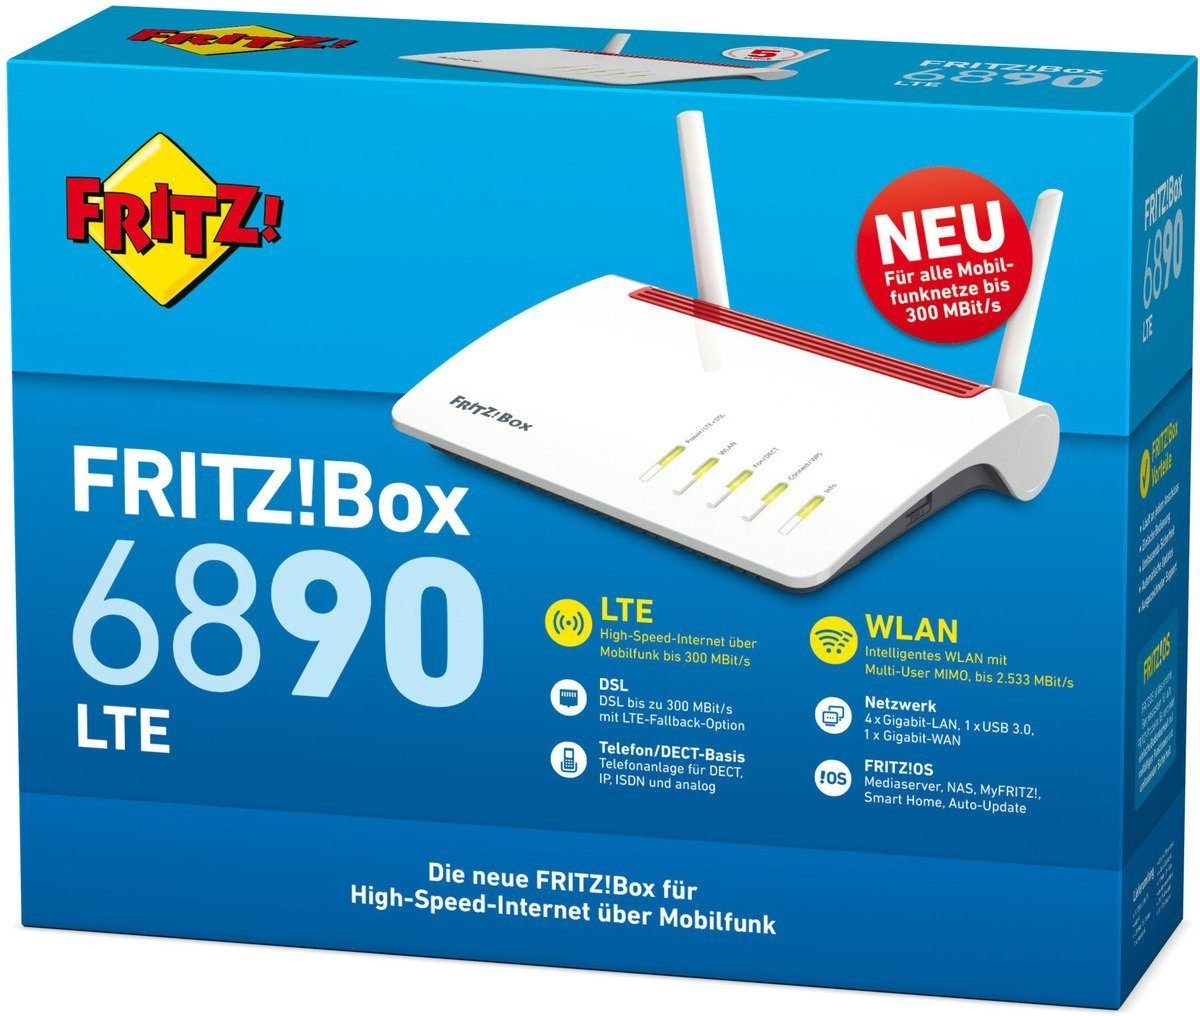 FRITZ!Box WLAN-Router 6890 AVM LTE